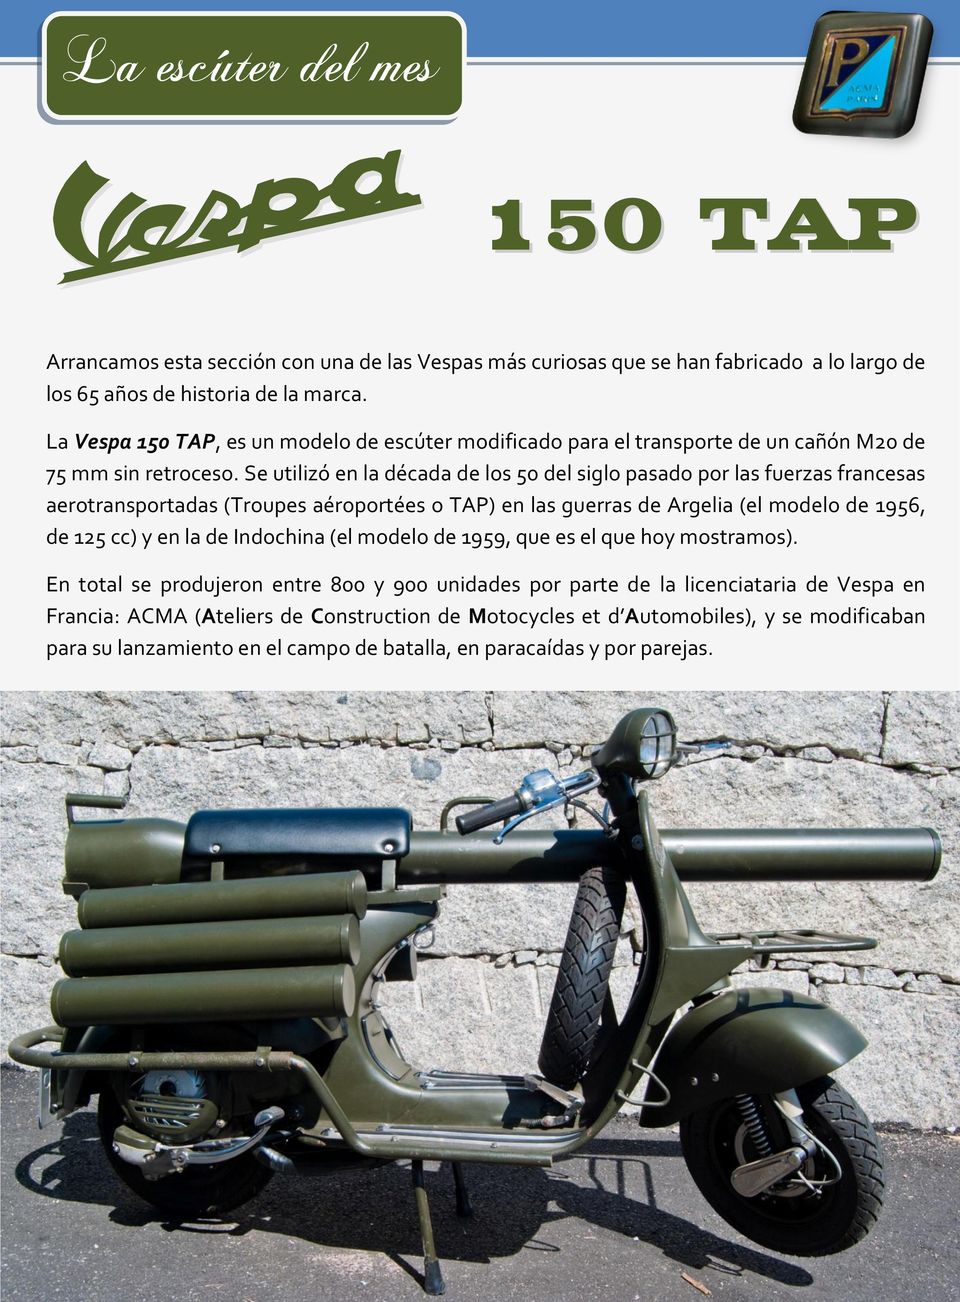 Se utilizó en la década de los 50 del siglo pasado por las fuerzas francesas aerotransportadas (Troupes aéroportées o TAP) en las guerras de Argelia (el modelo de 1956, de 125 cc) y en la de